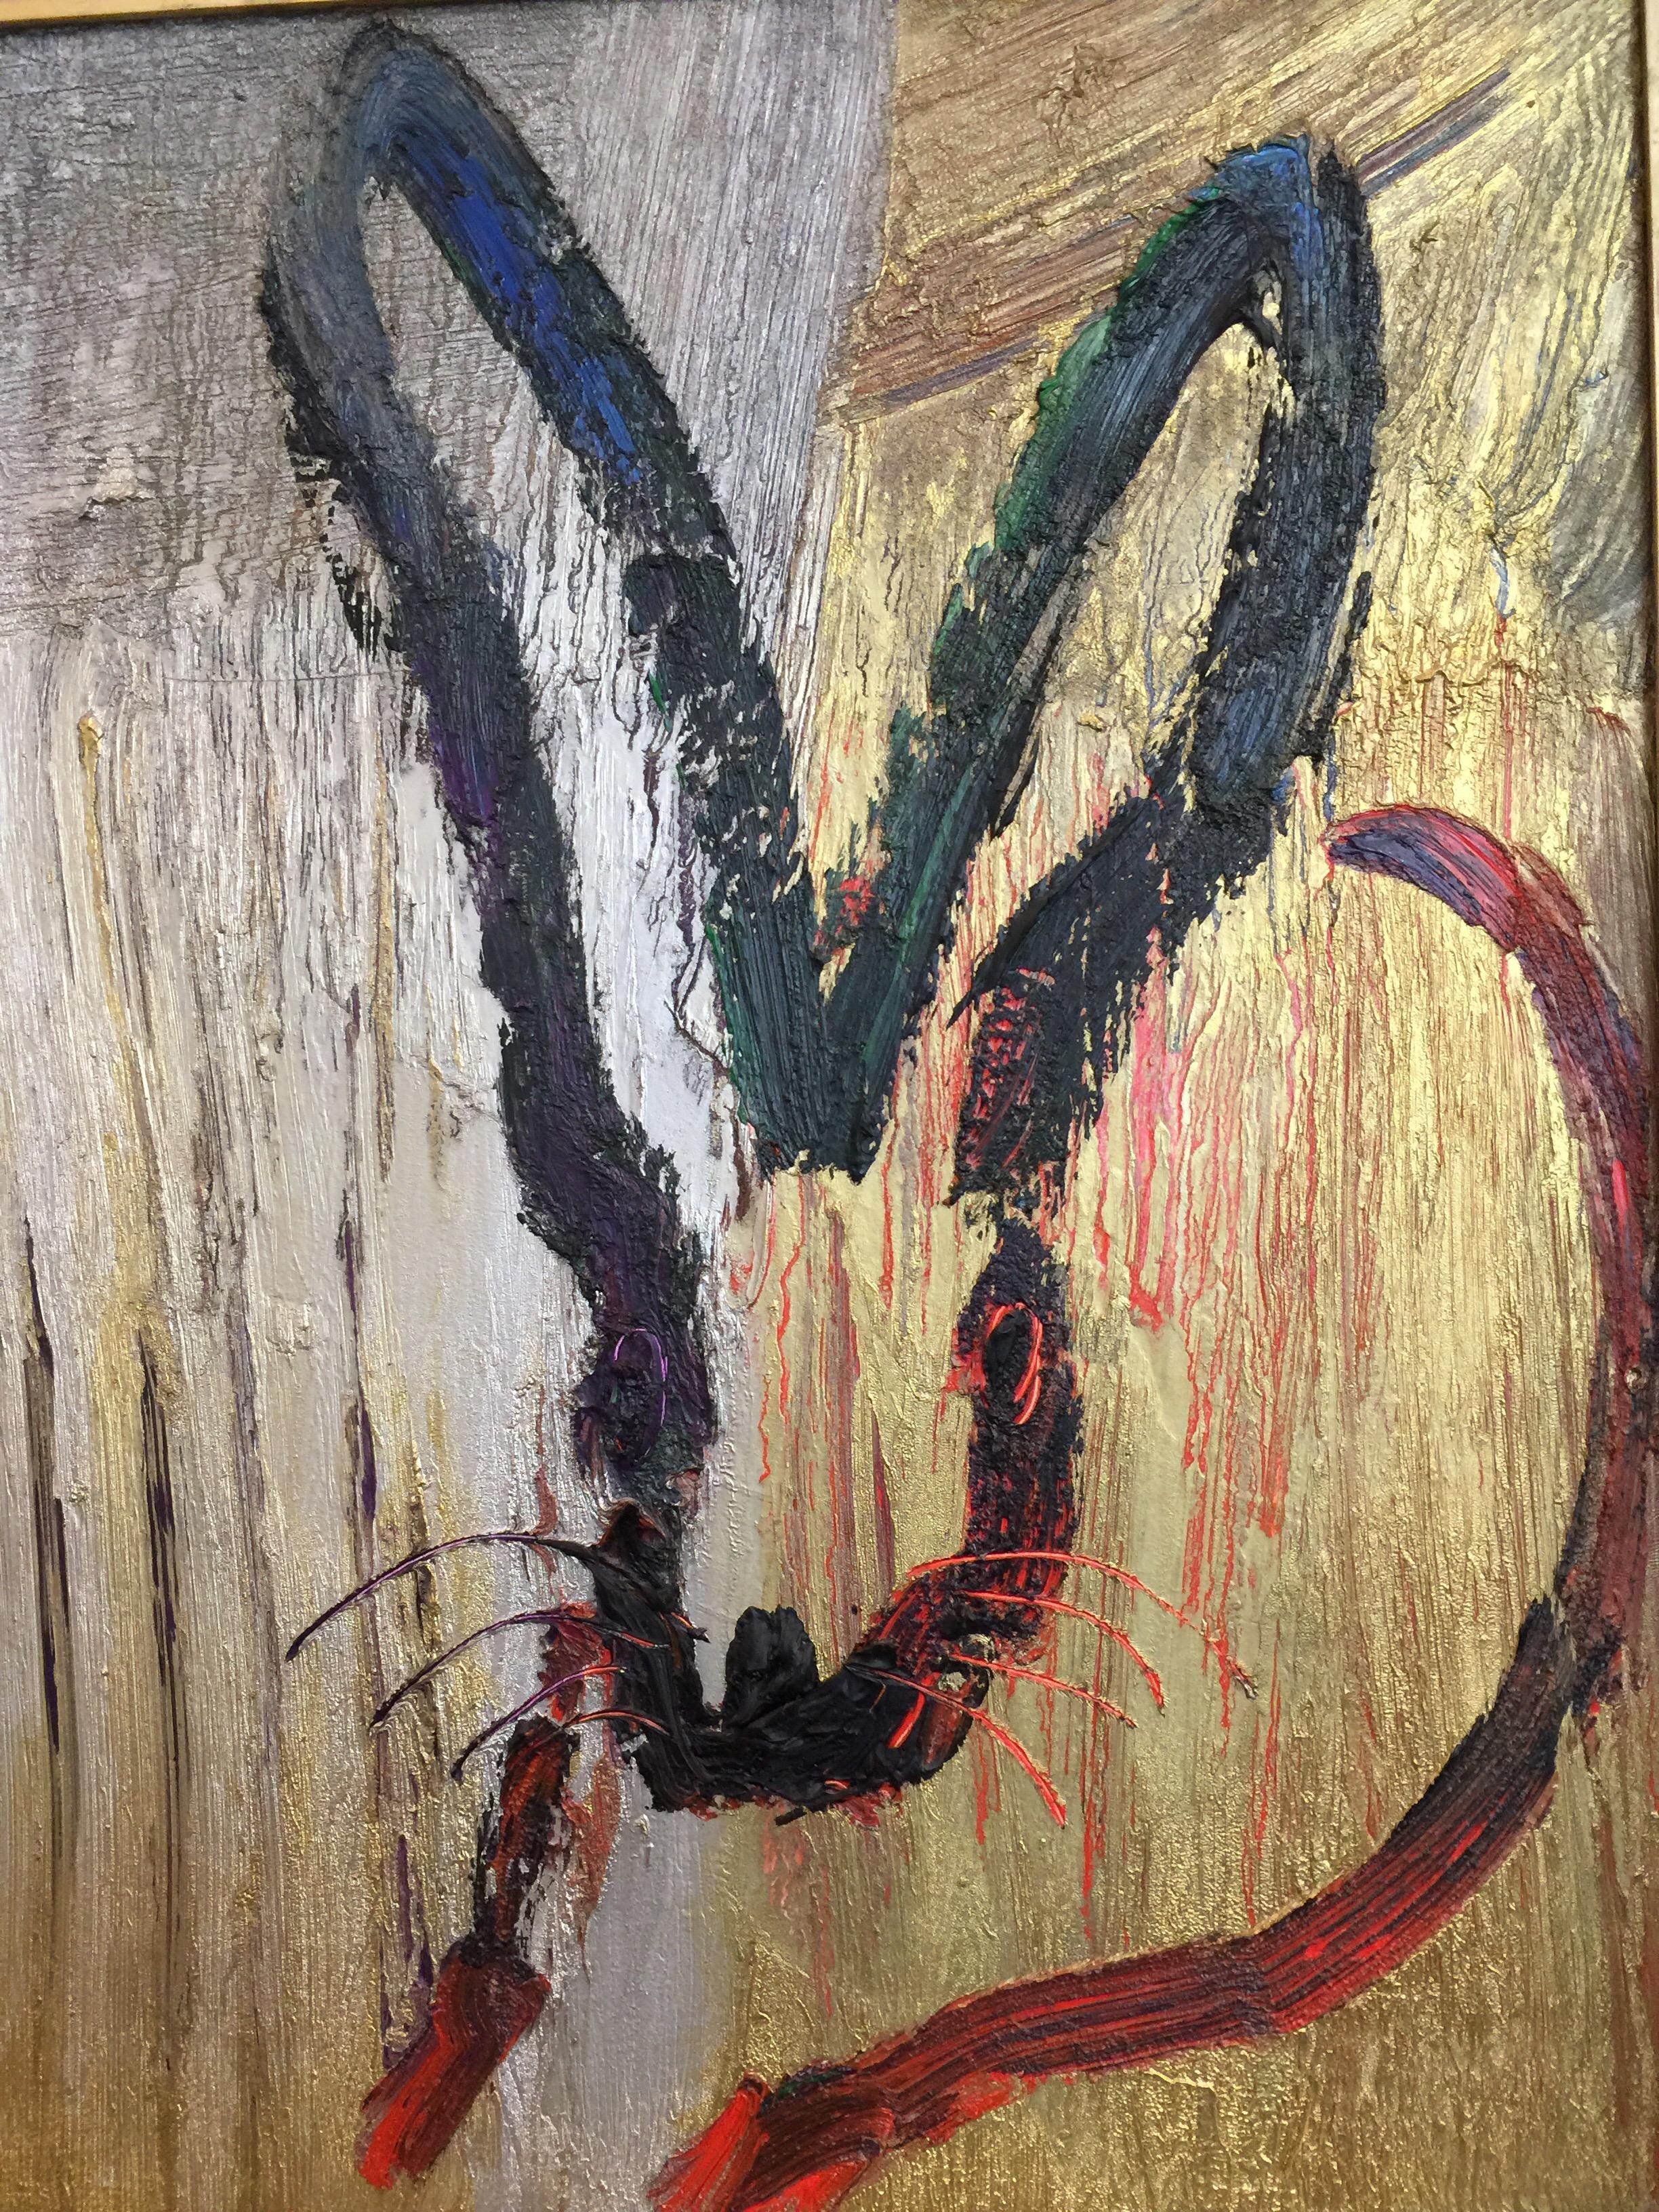 Fond métallisé argent et or avec contour de lapin rouge vibrant, joliment encadré.  SIGNÉ et daté 2014 - premier travail pour Slonem.

Hunt Slonem est un peintre de renom, connu pour son imagerie figurative et son expressionnisme abstrait. Slonem